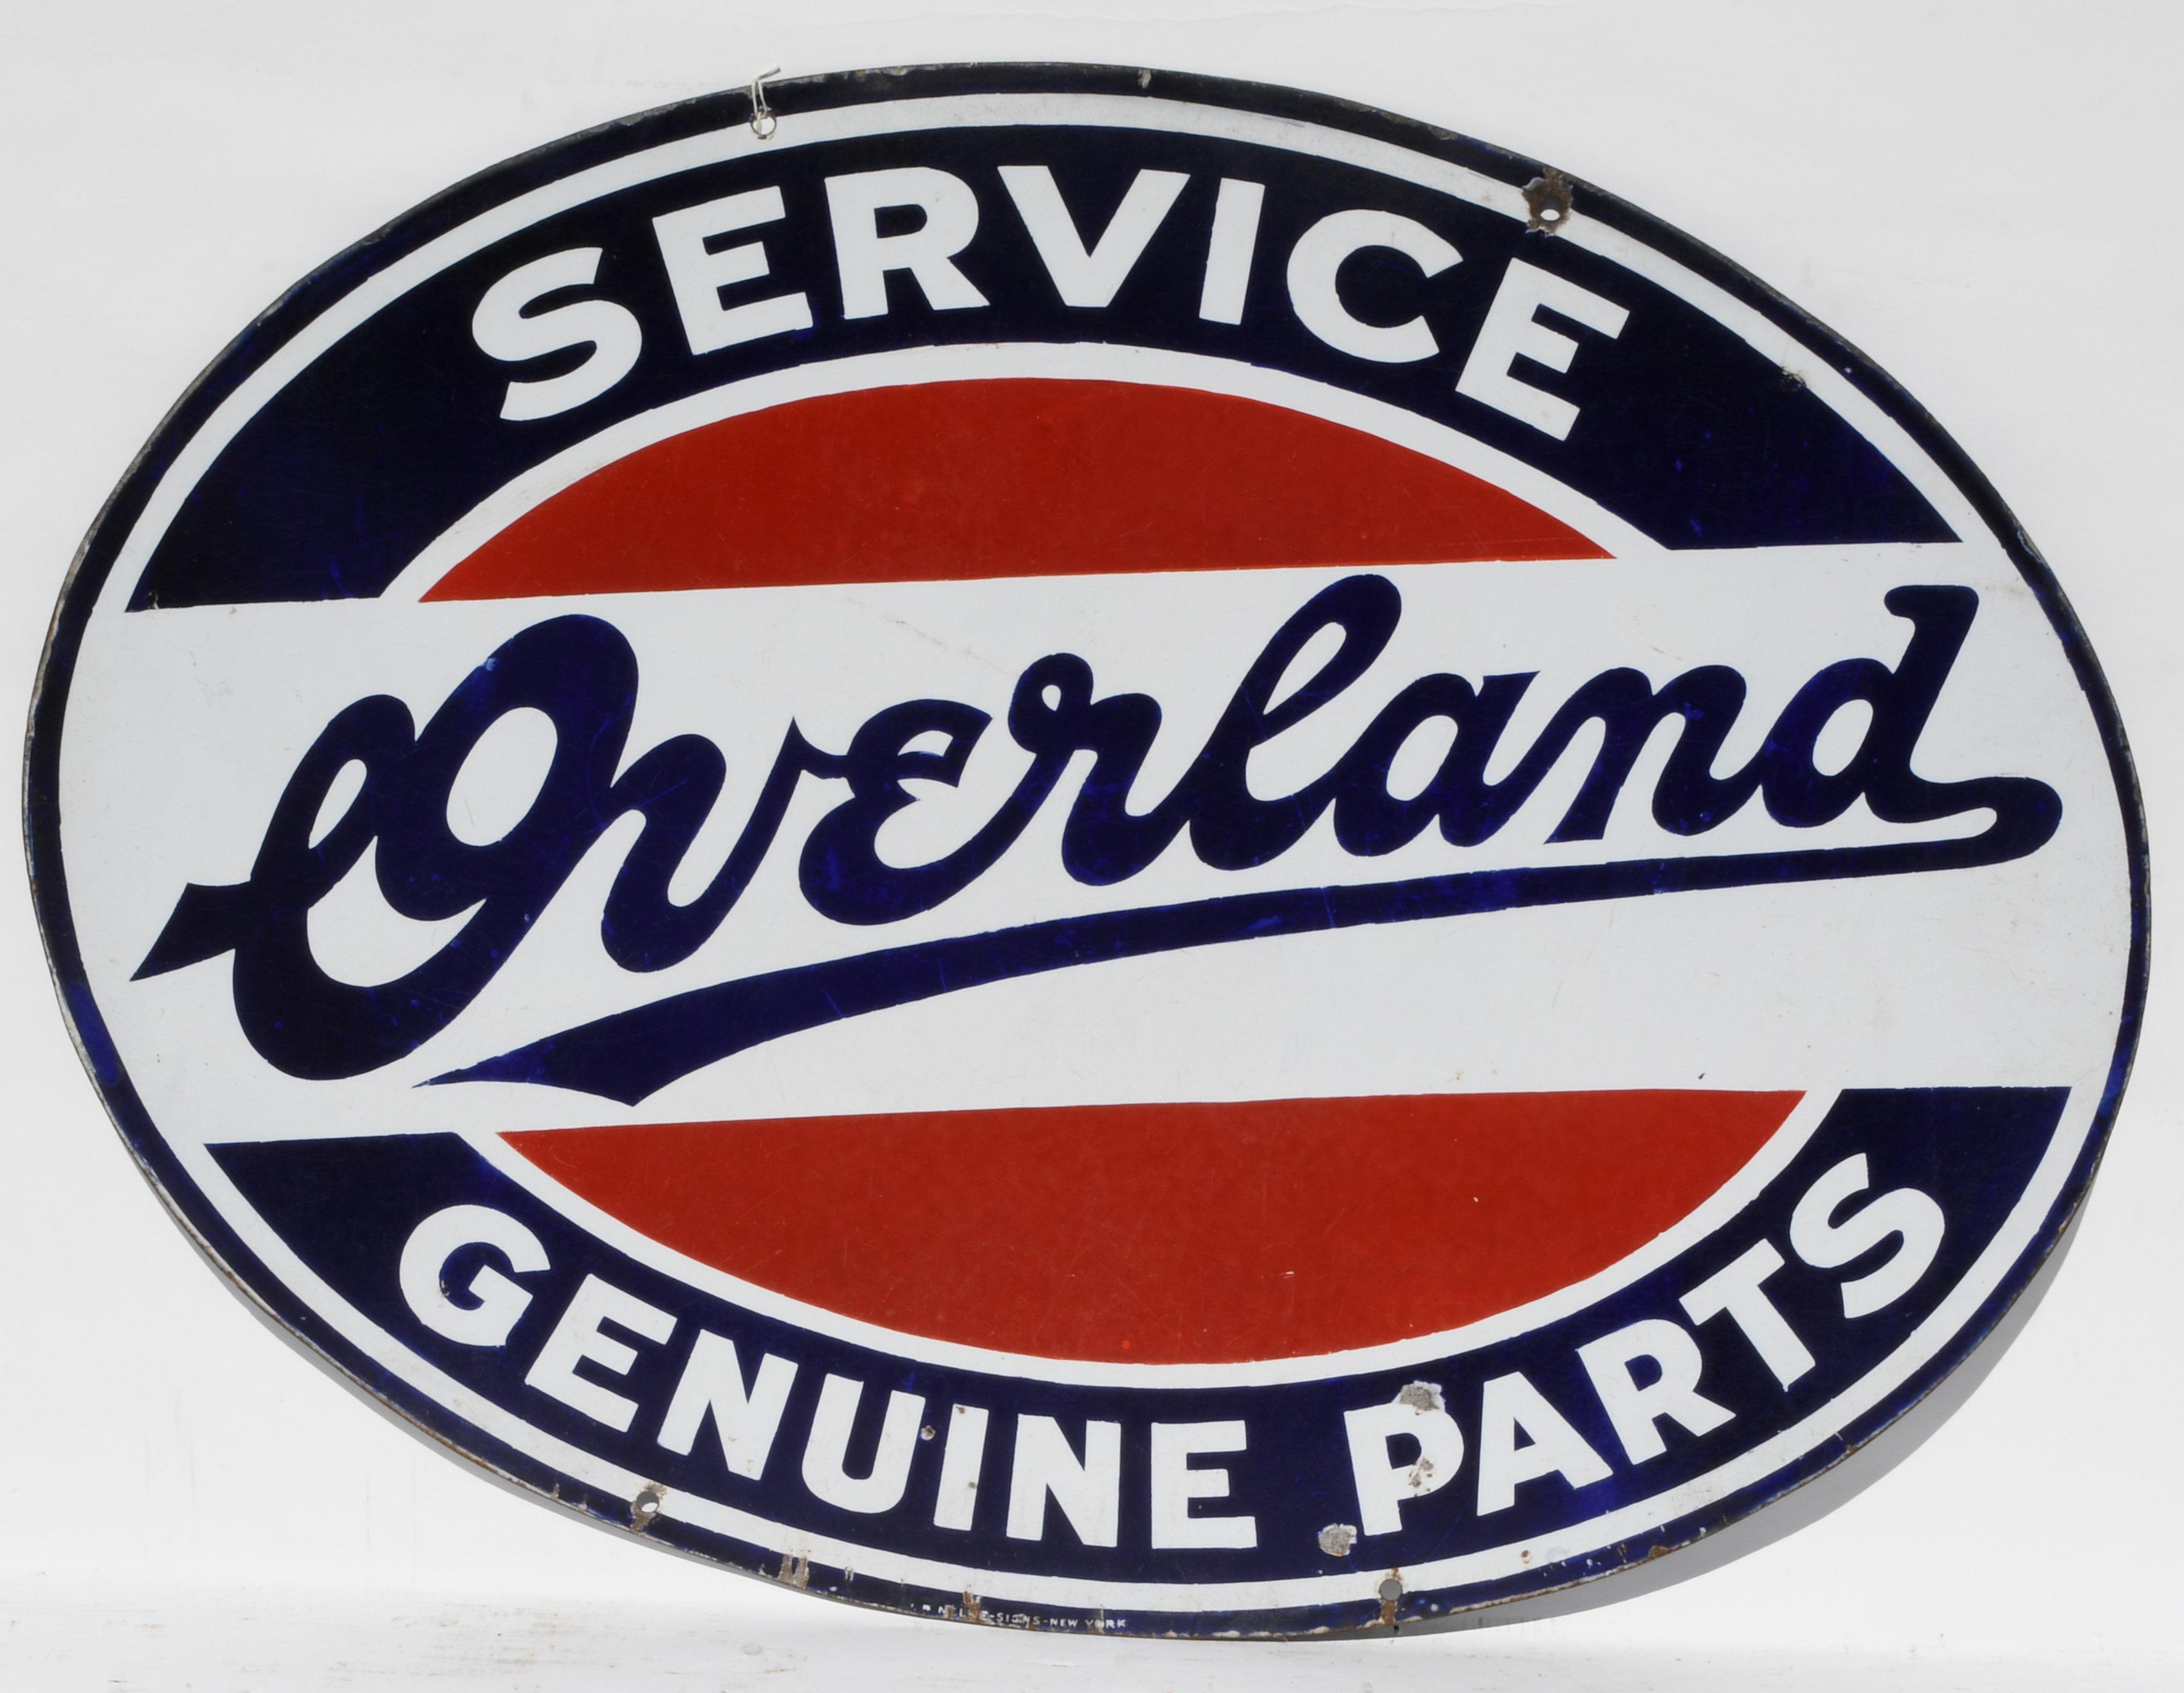 Overland Service Genuine Parts Porcelain Sign